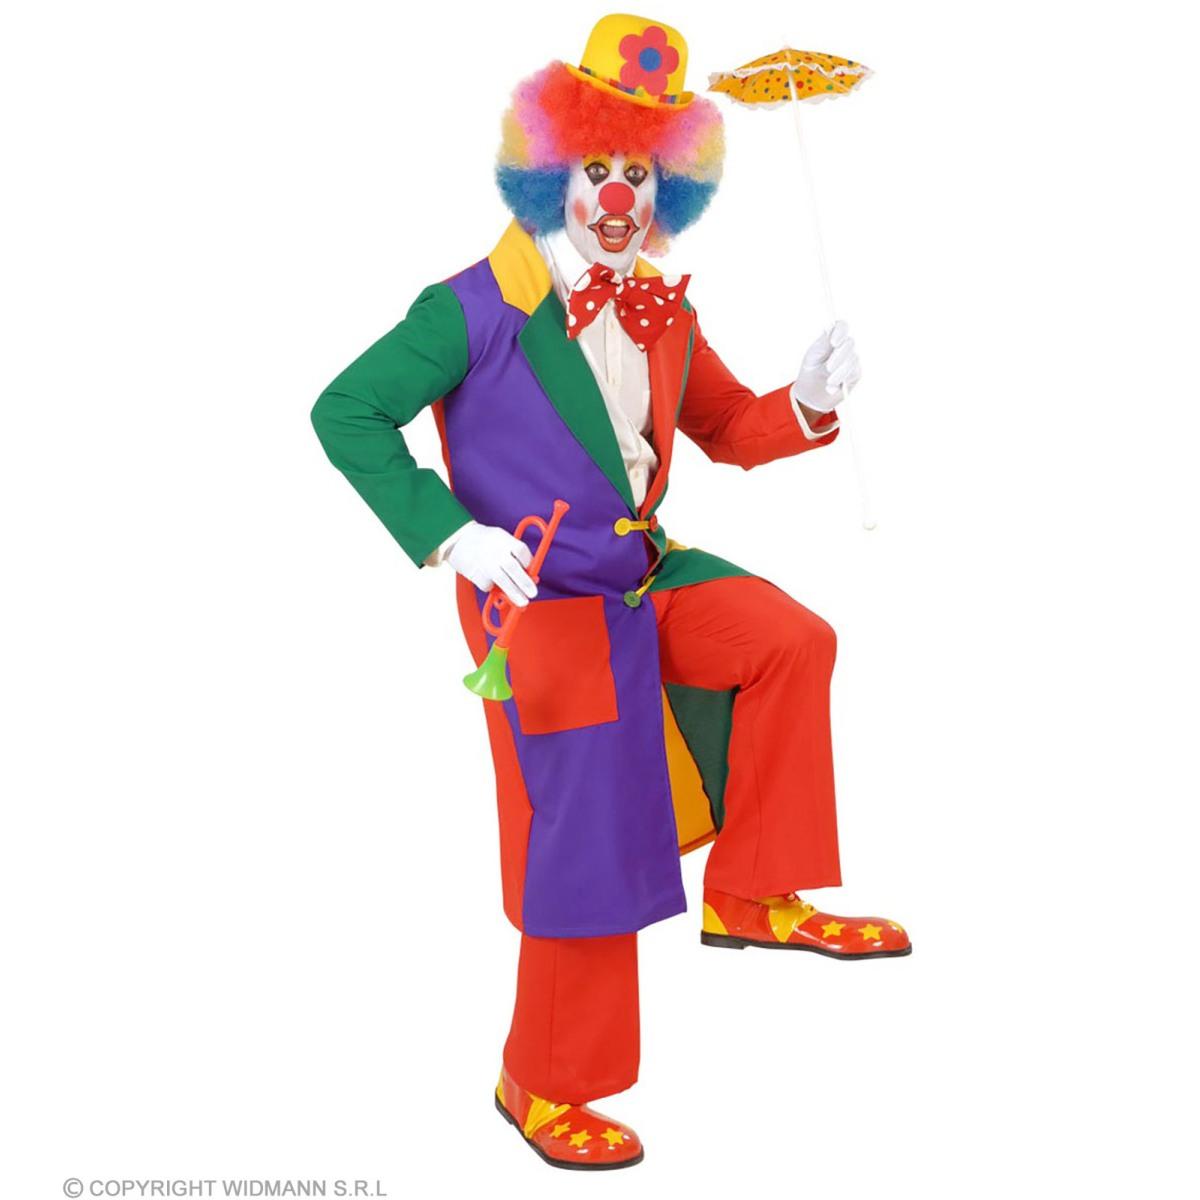 Costume Giacca Clown Multicolor